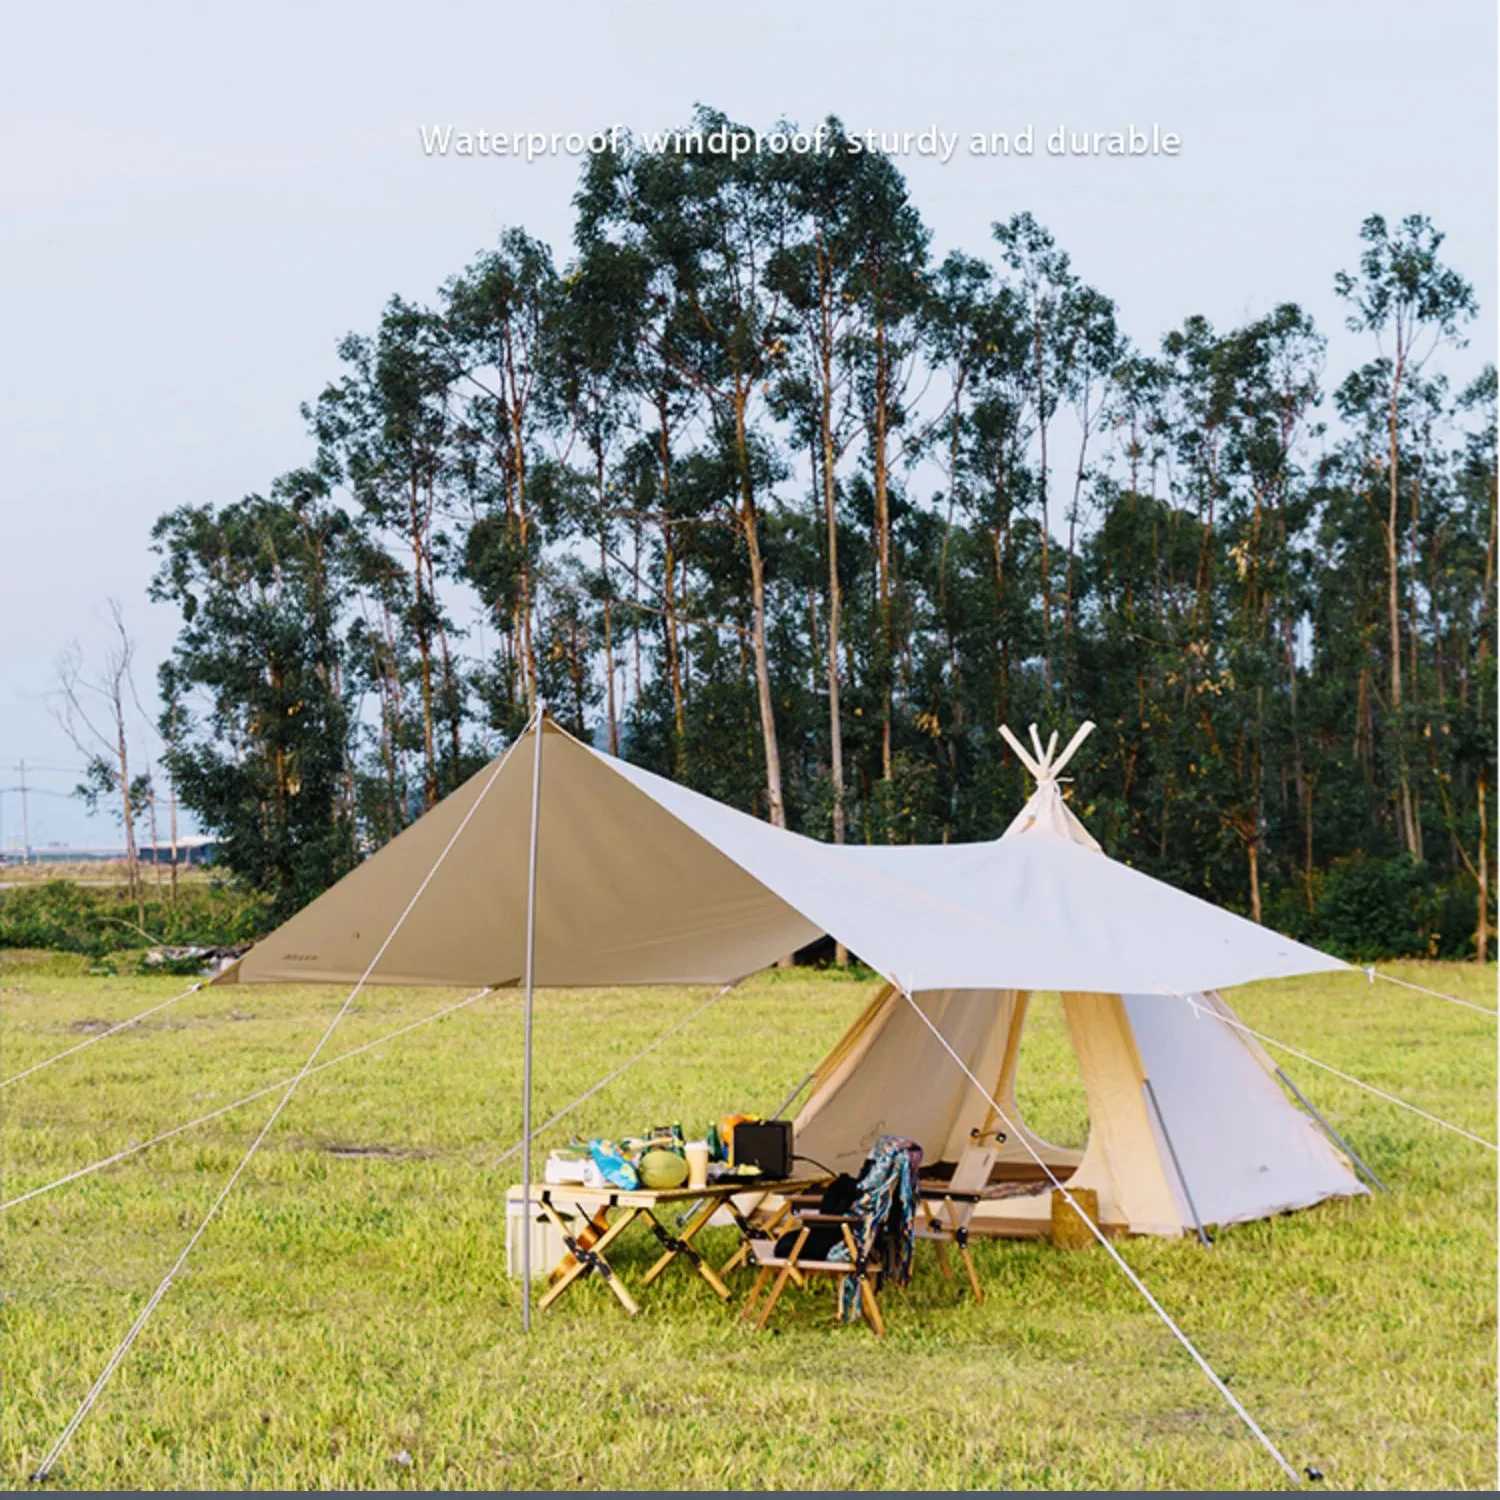 

Утолщенная палатка для кемпинга, двойная занавеска, защита от дождя, солнцезащитный крем, индийская пирамида, дикое небо, репеллент от комаров